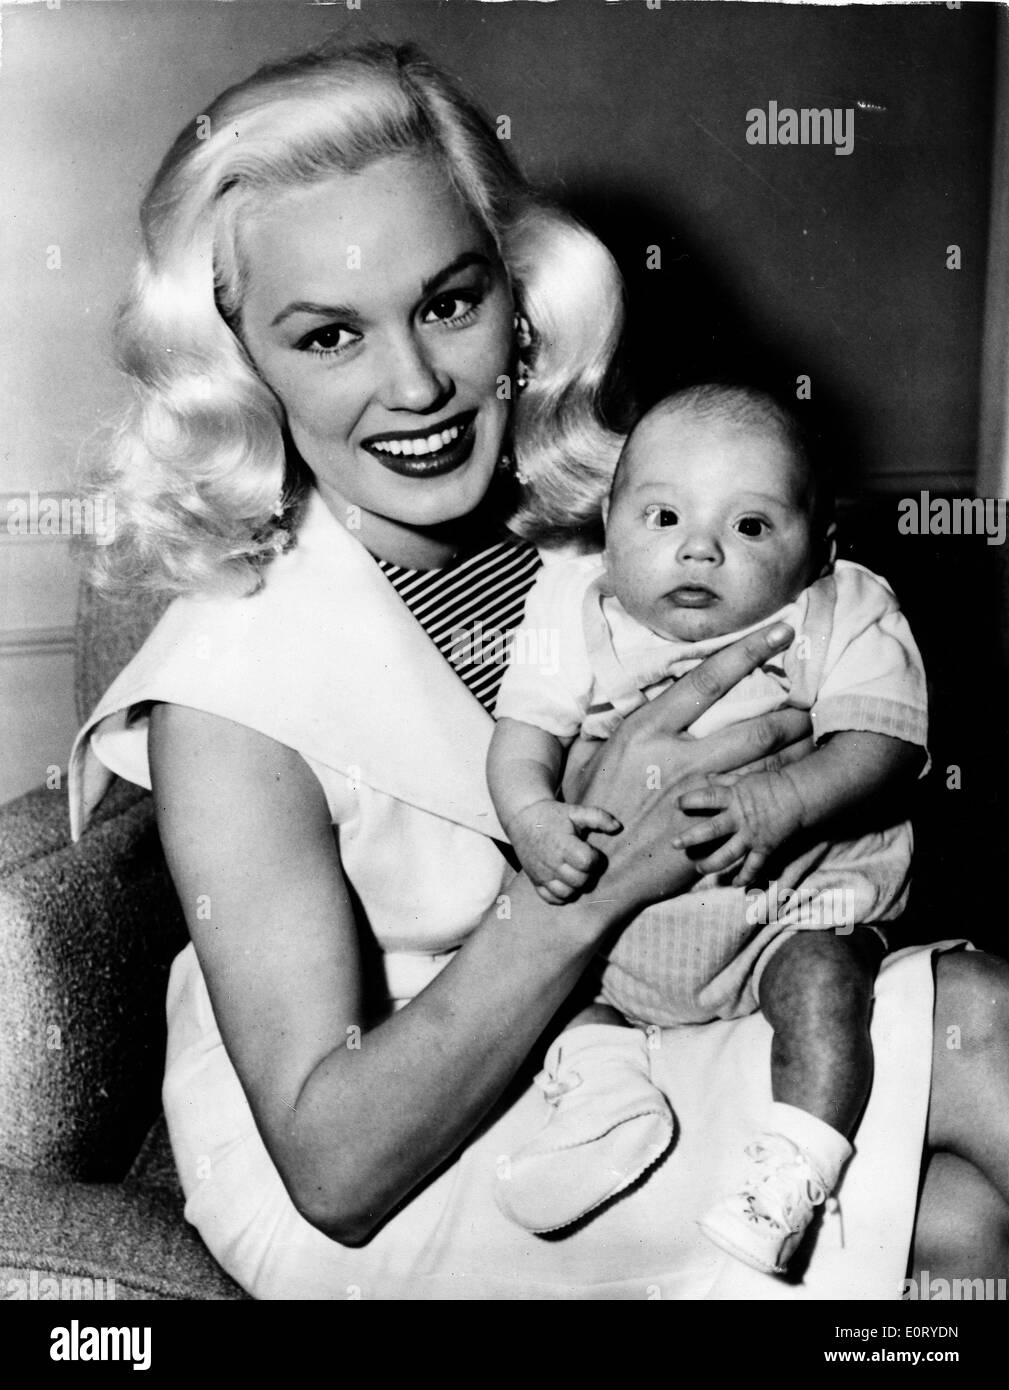 MAMIE VAN DOREN, geboren Joan Olander, lächelt und hält ein Baby. Stockfoto